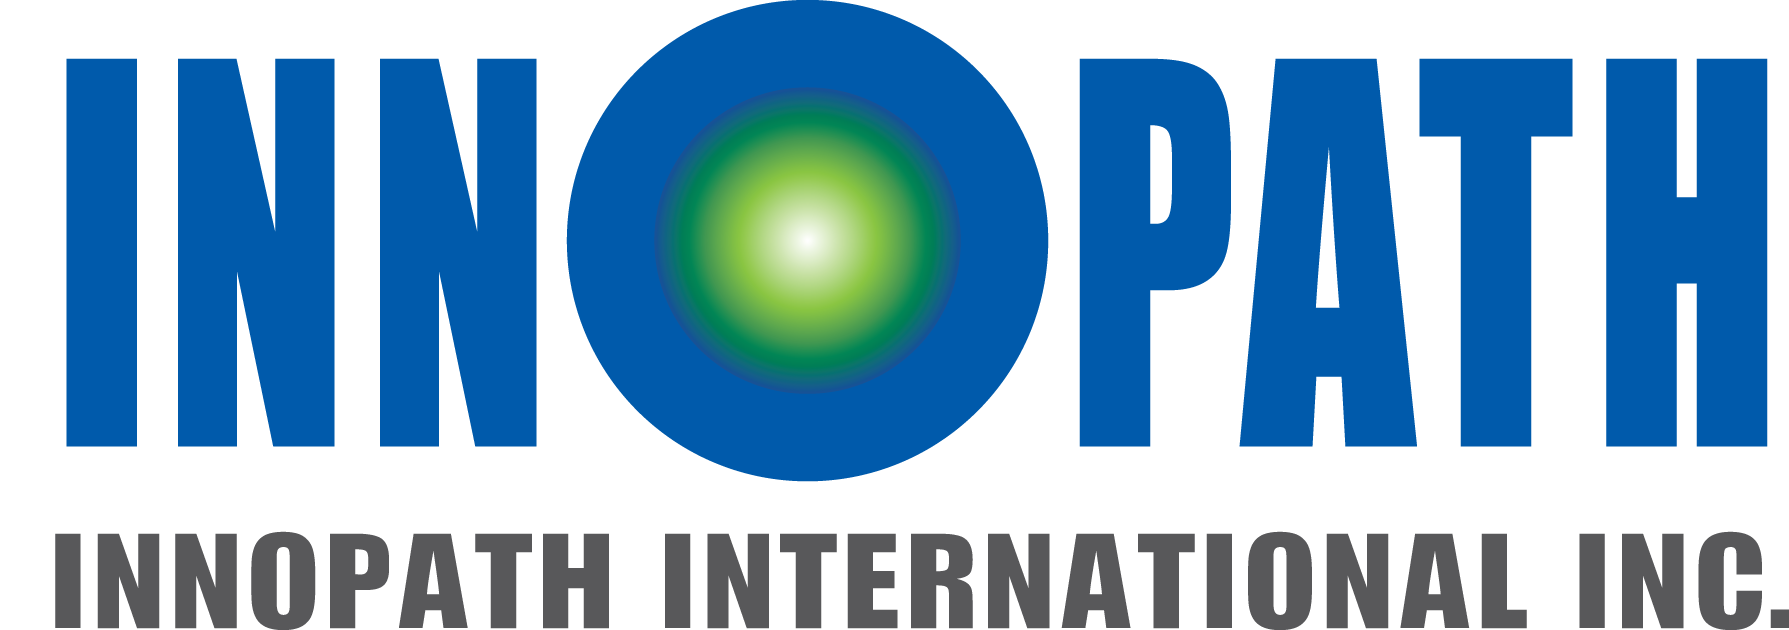 Innopath International Inc